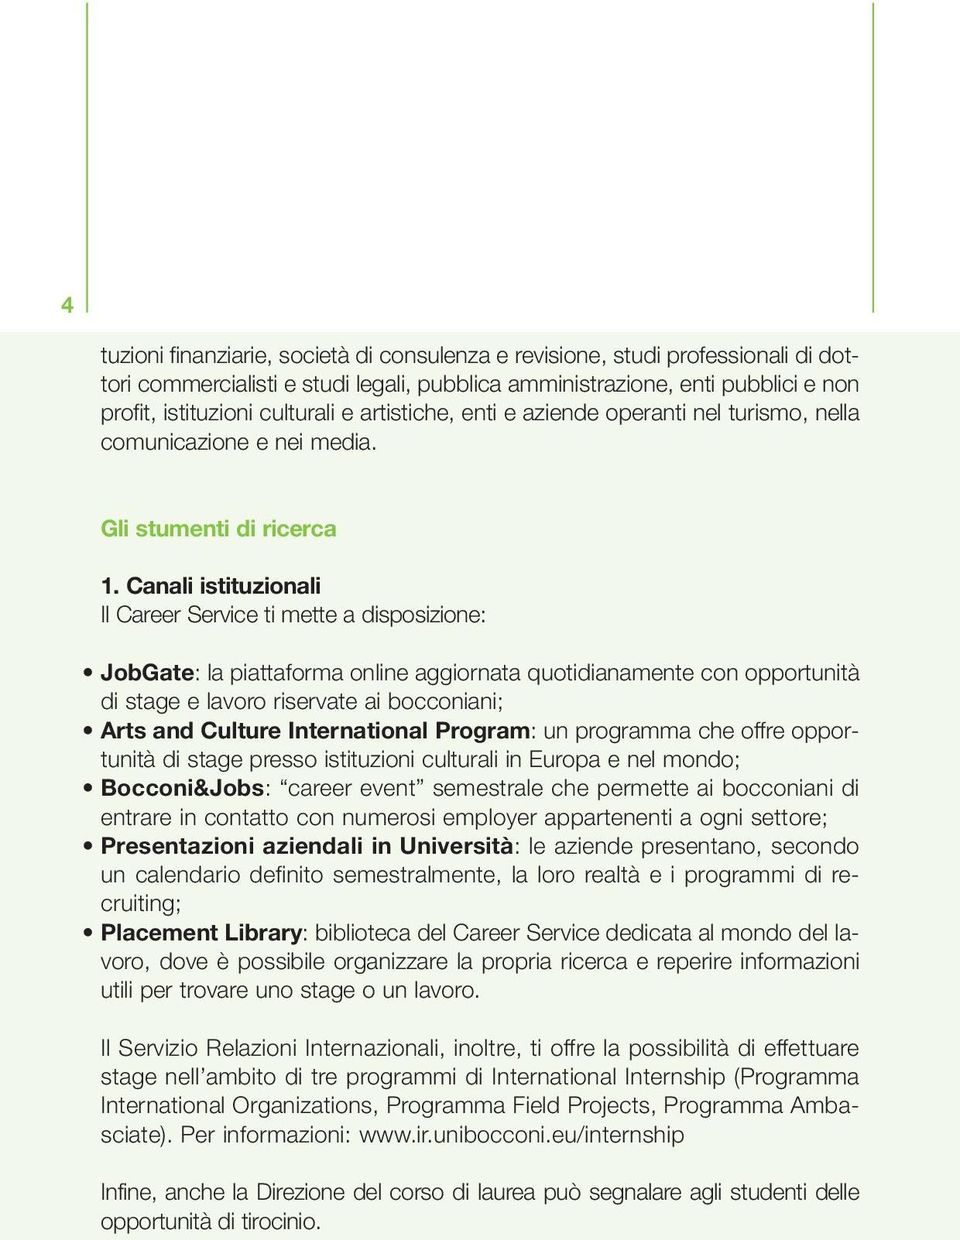 Canali istituzionali Il Career Service ti mette a disposizione: JobGate: la piattaforma online aggiornata quotidianamente con opportunità di stage e lavoro riservate ai bocconiani; Arts and Culture